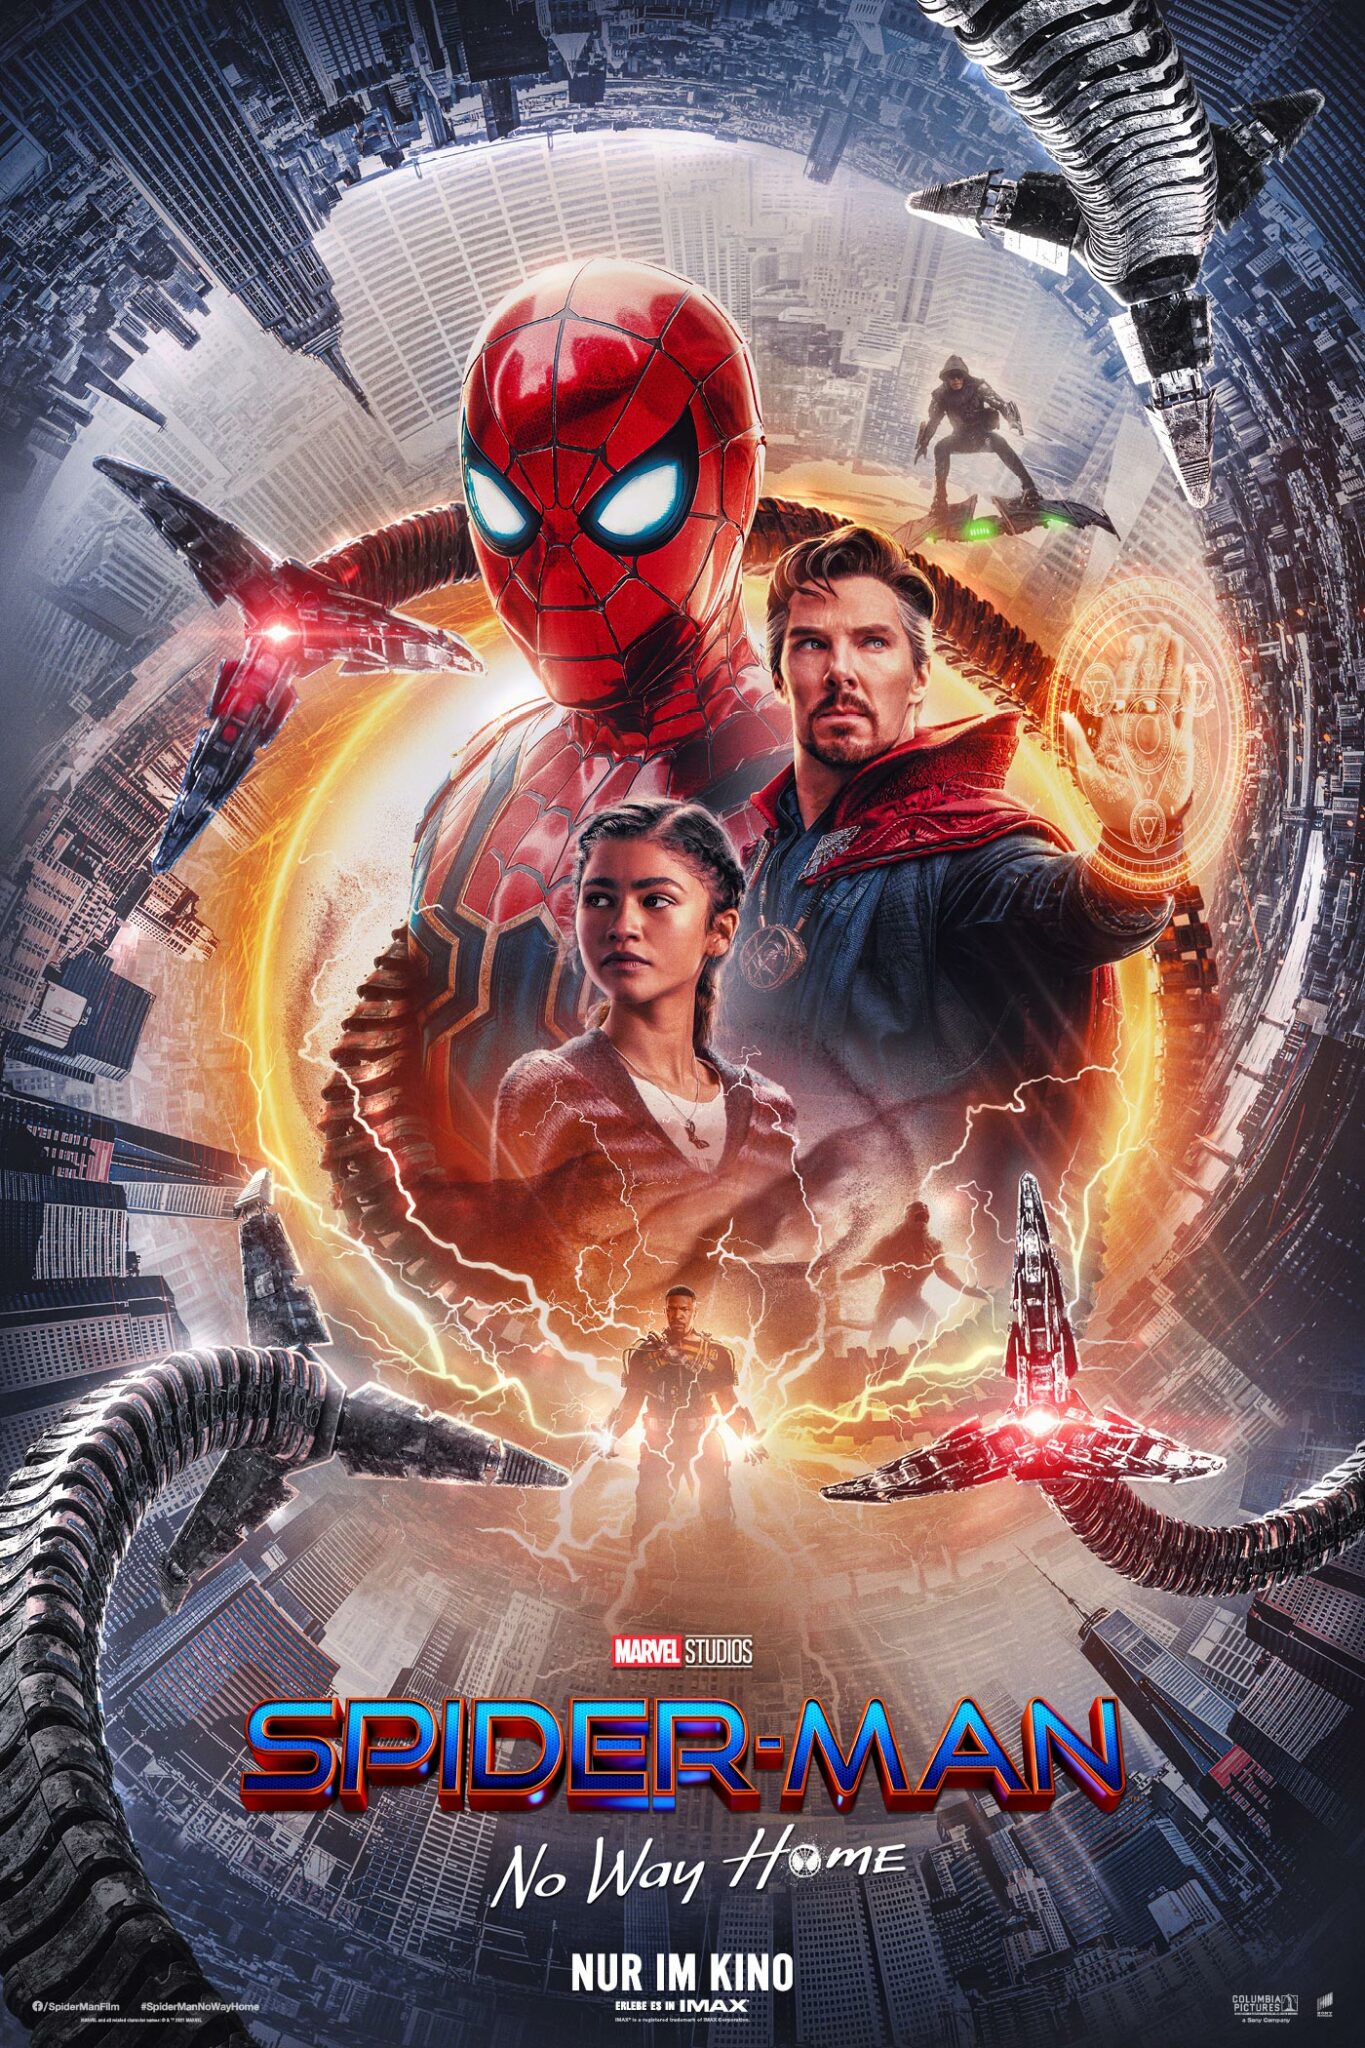 Das Poster zu Spider-Man: No Way Home zeigt die Hauptfiguren, Spider-Man, MJ und Dr. Strange, im Zentrum von einem orangen Lichtkreis umrahmt. Noch weiter außen sieht man die Tentakel von Doc Ock, sowie kreisförmig angeordnete Wolkenkratzer.